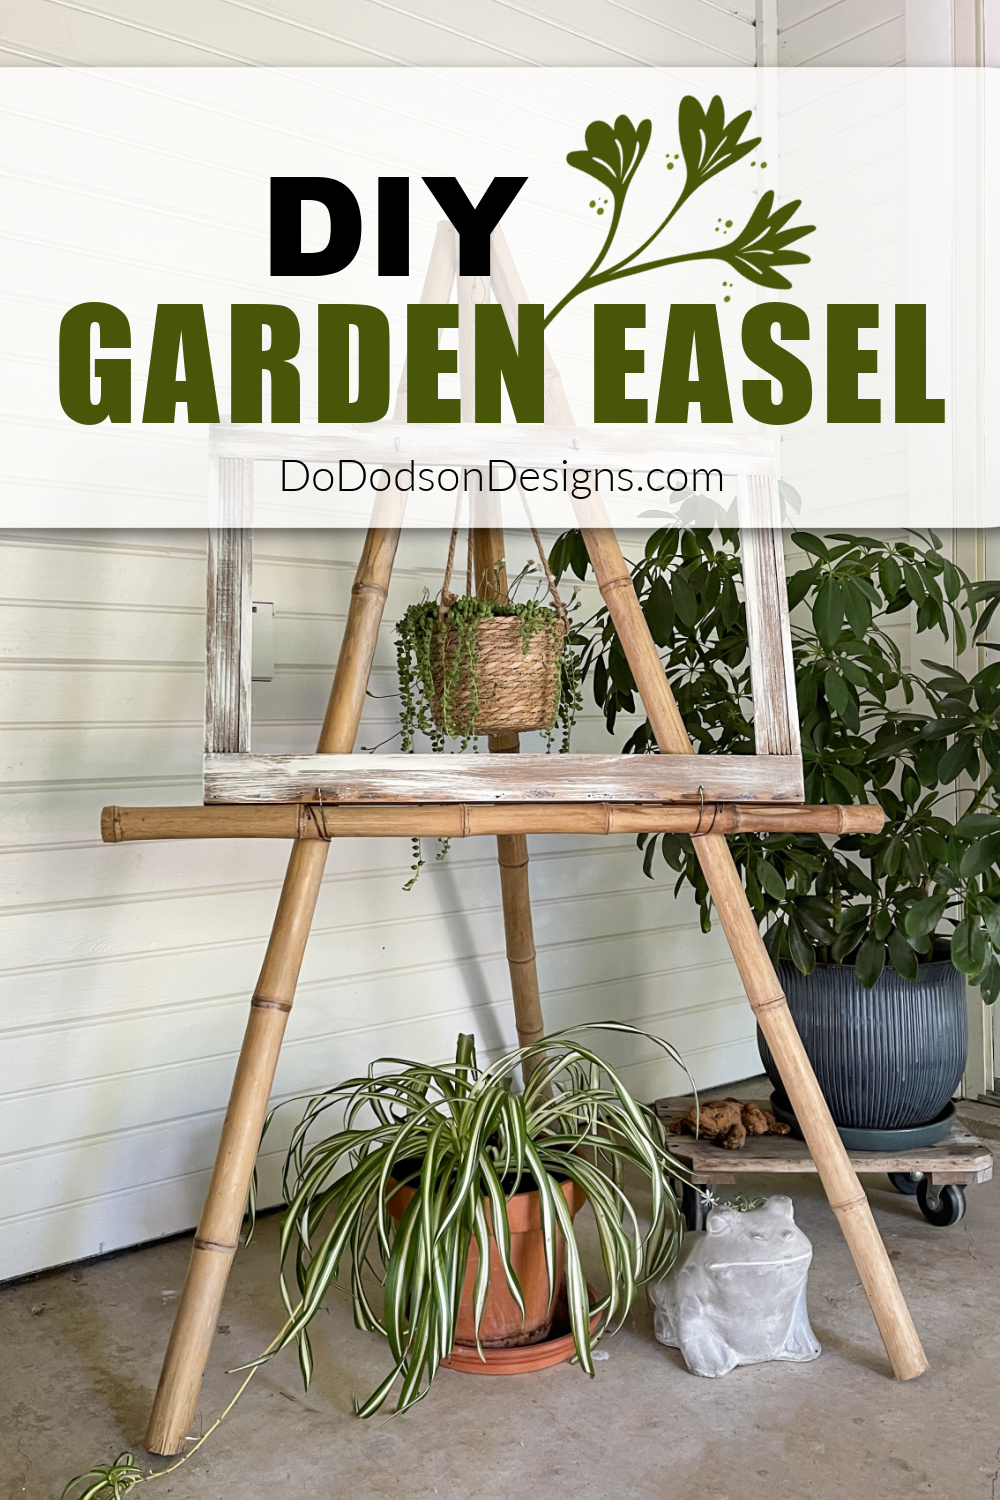 DIY Garden Easel (Elevate Your Backyard Decor)